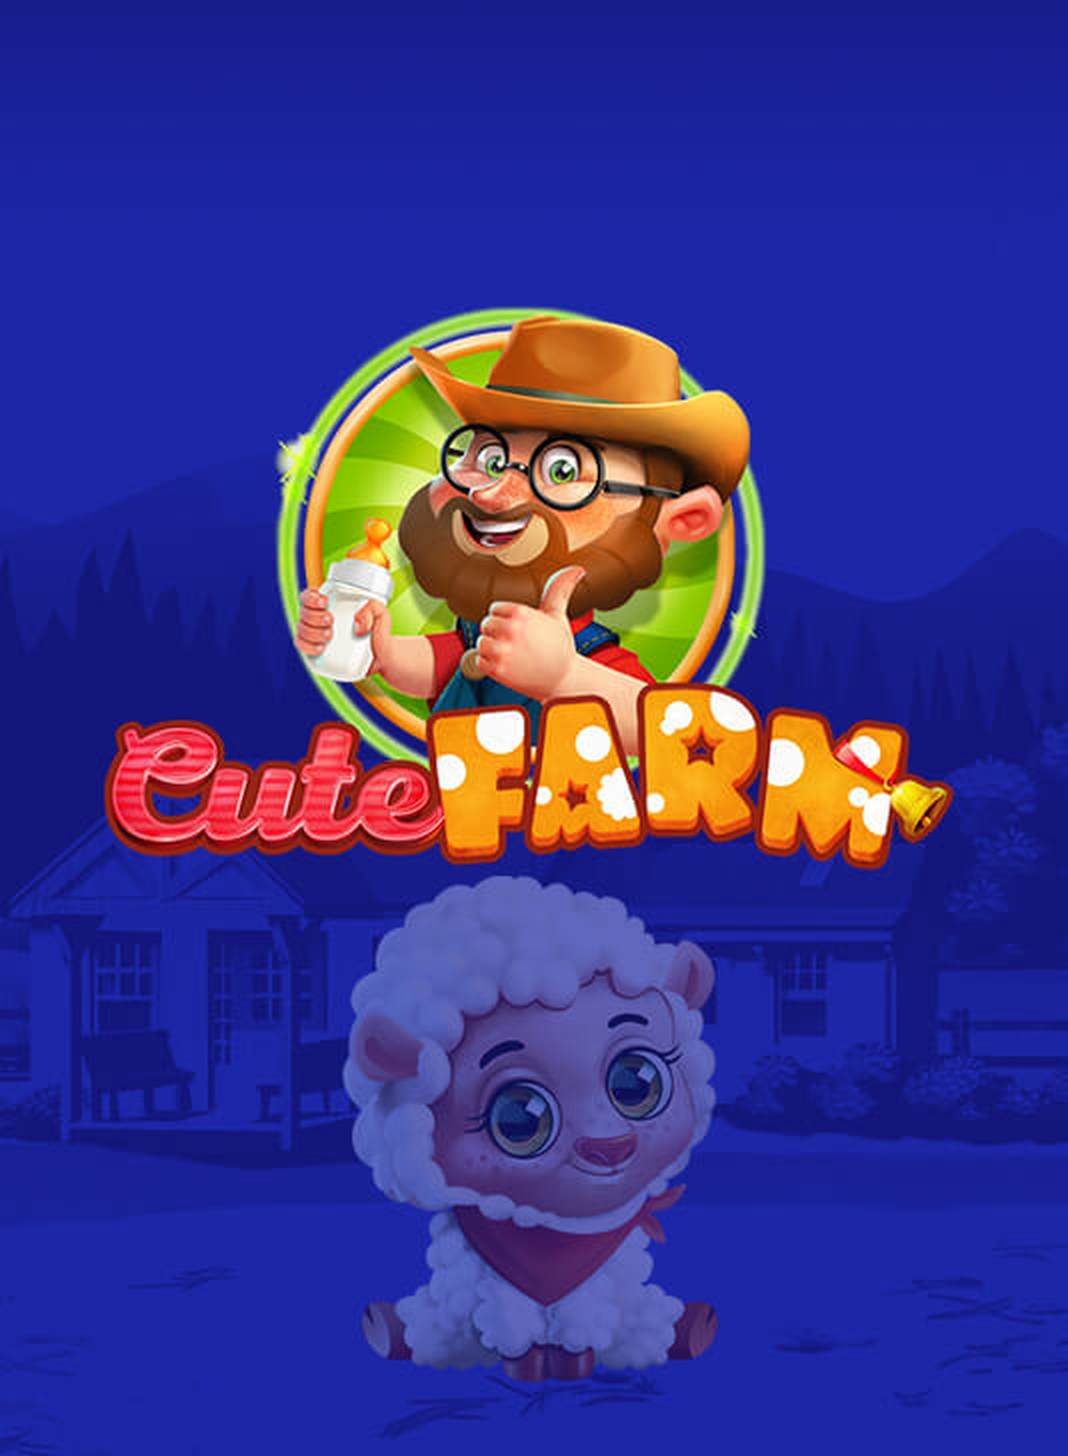 Cute Farm demo